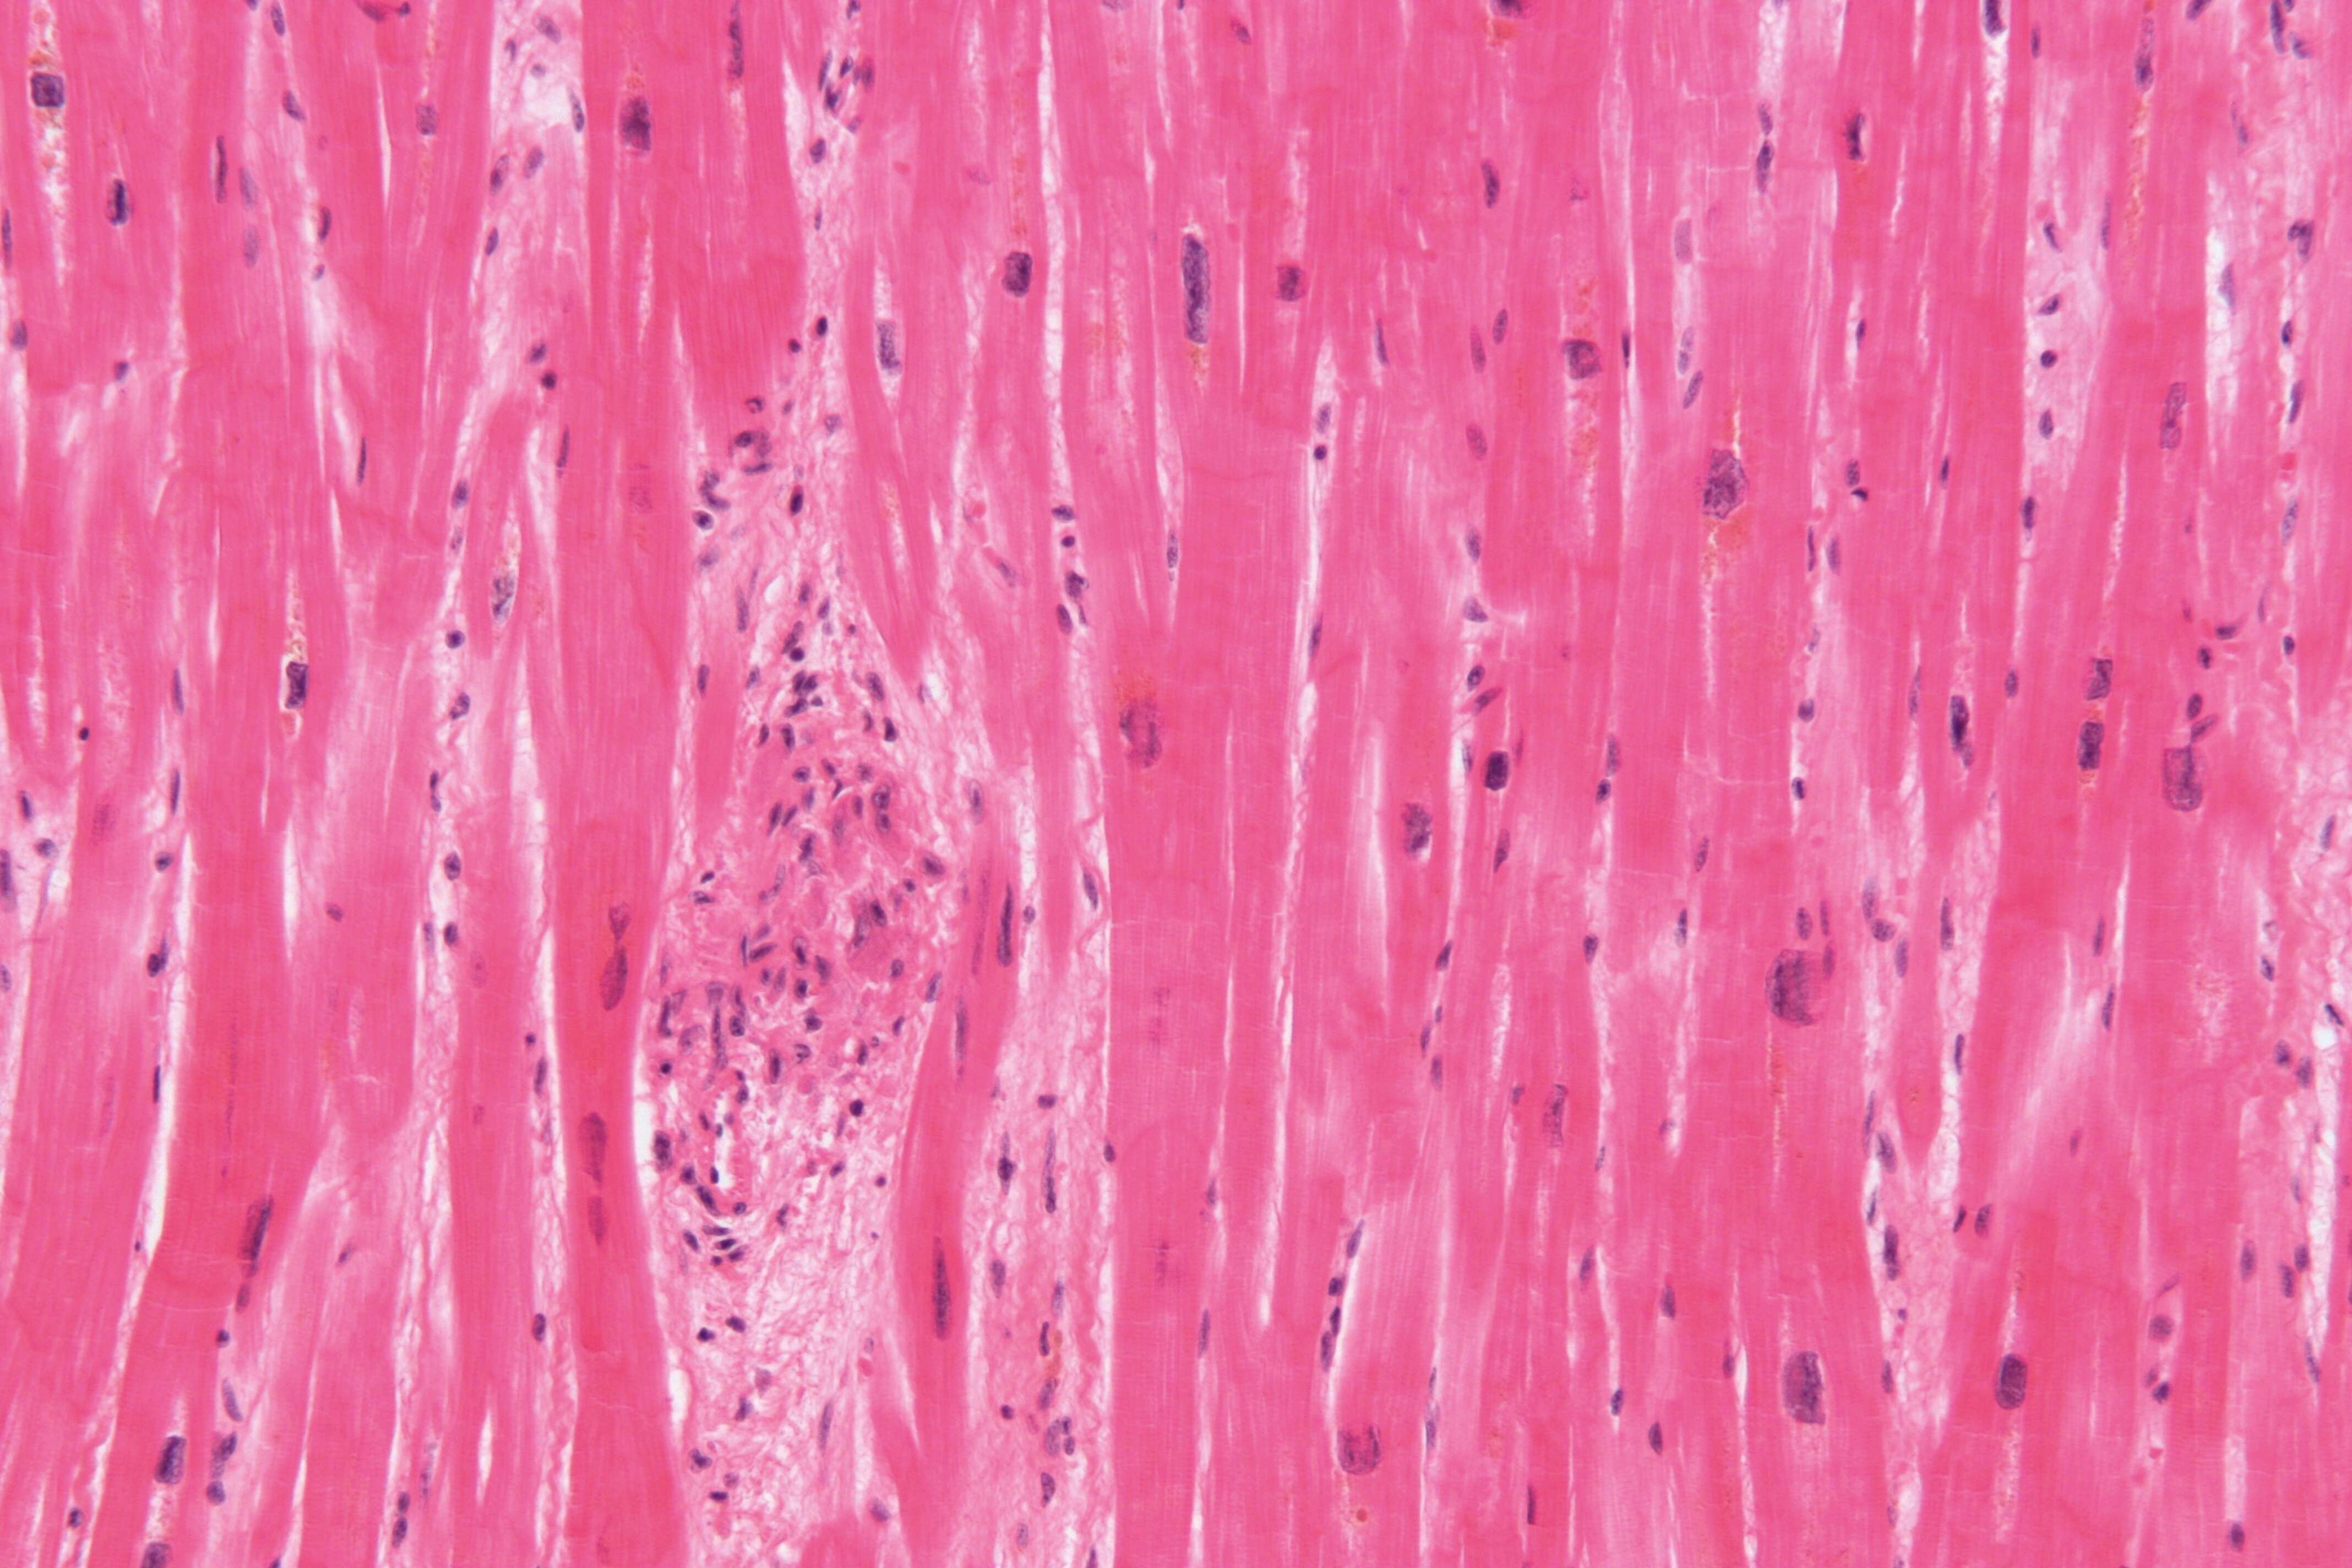 Image of Streptococcus pyogenes